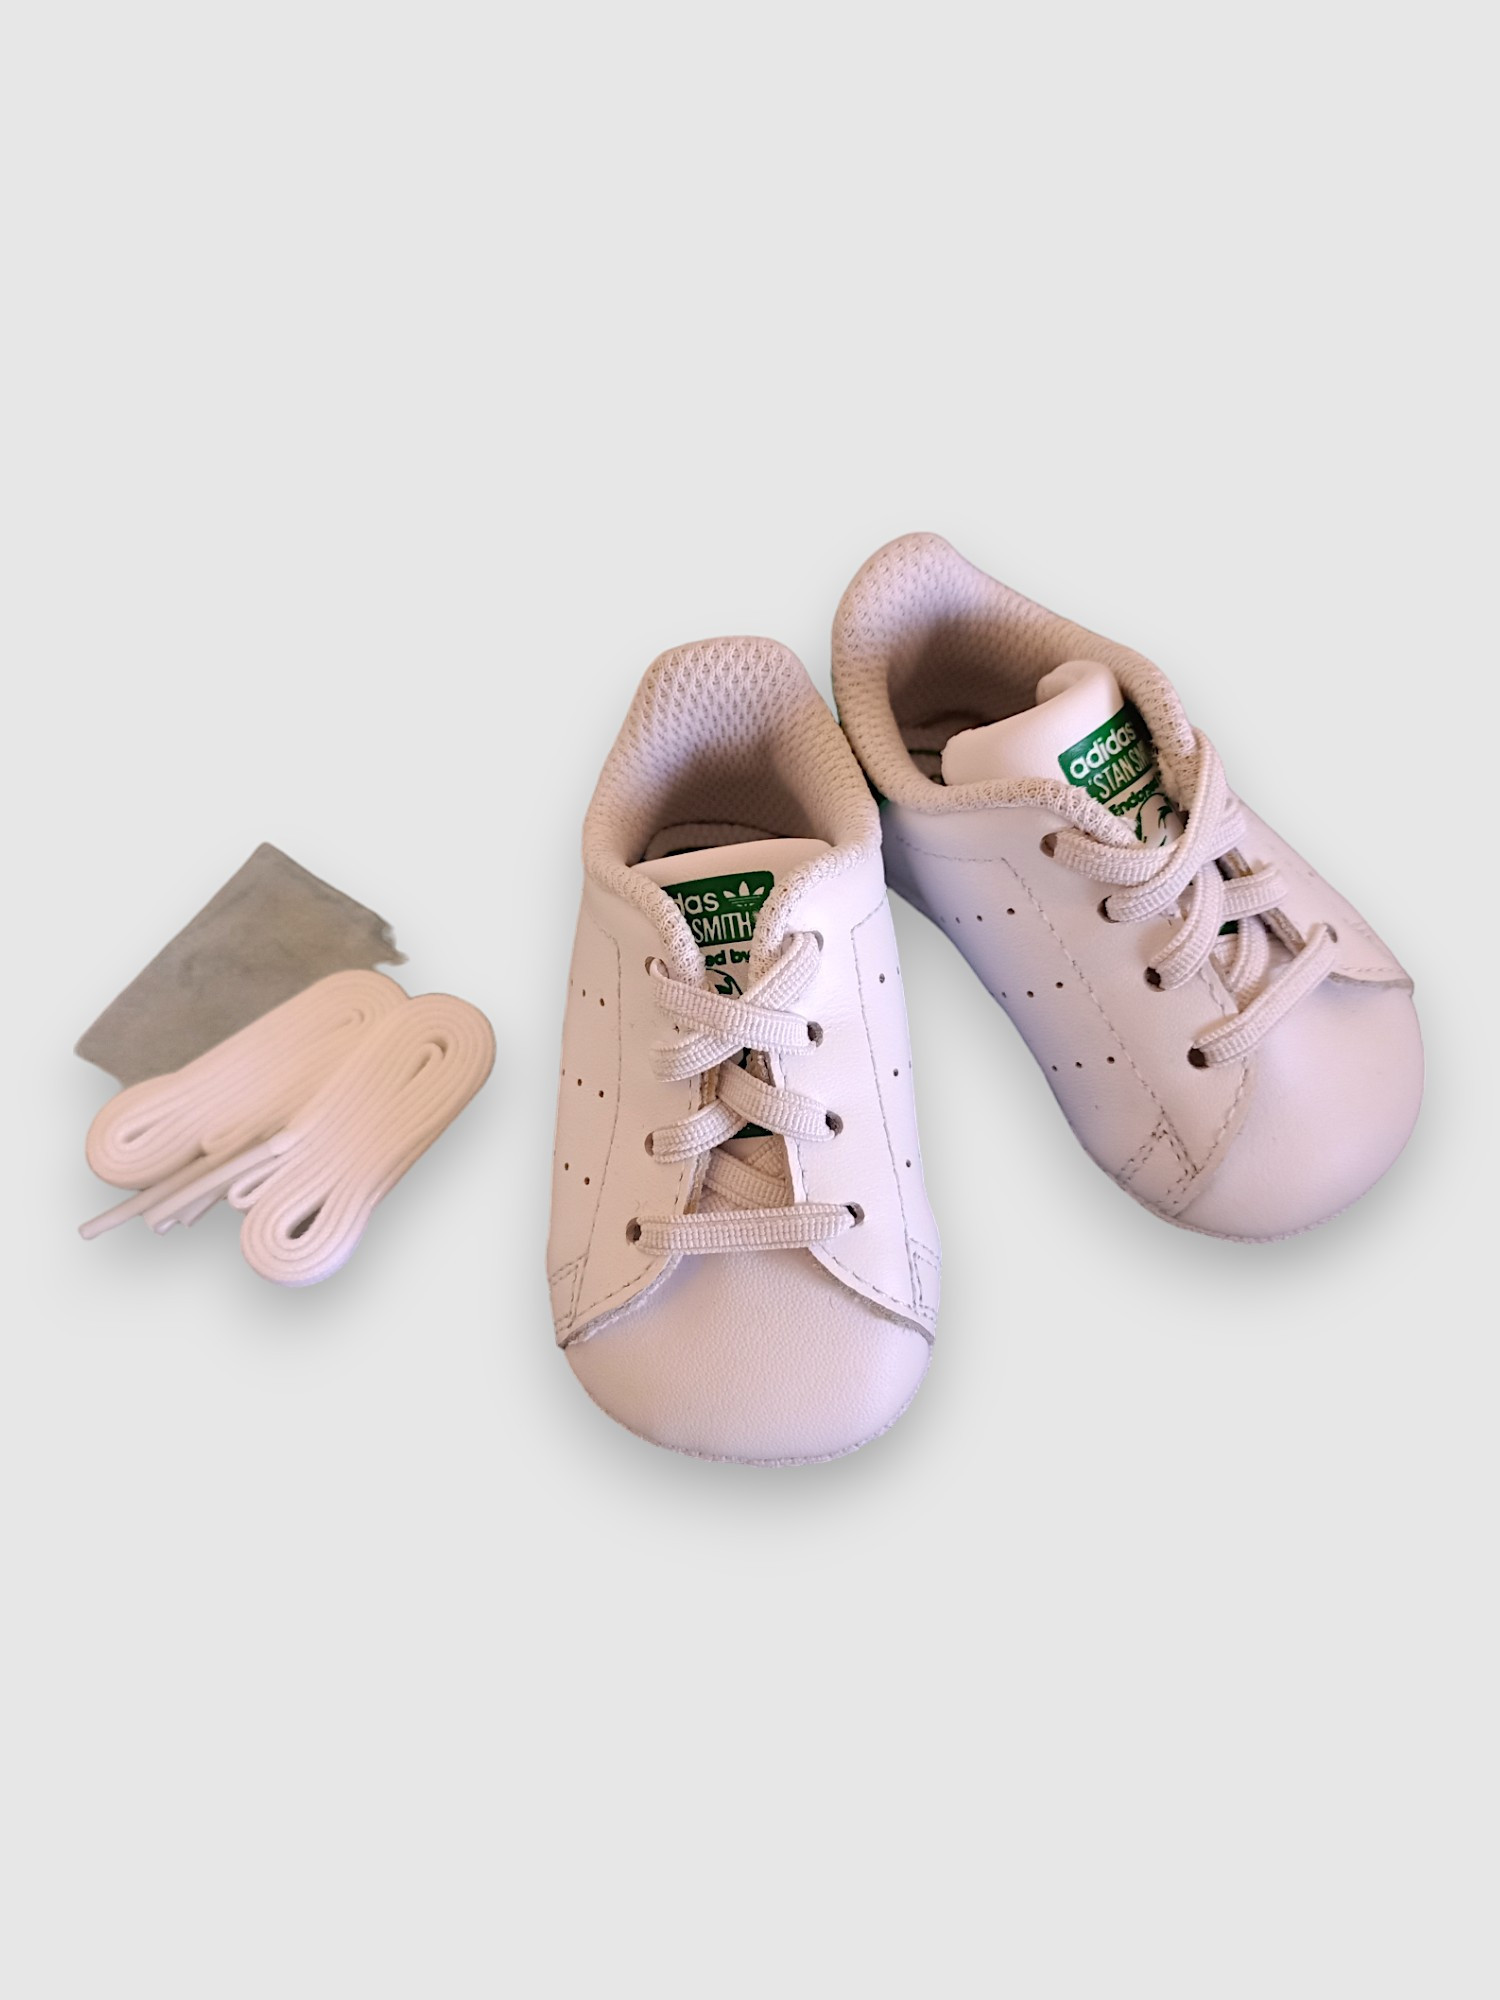 adidas Sneakers für kleine Babys neu, ungetragen